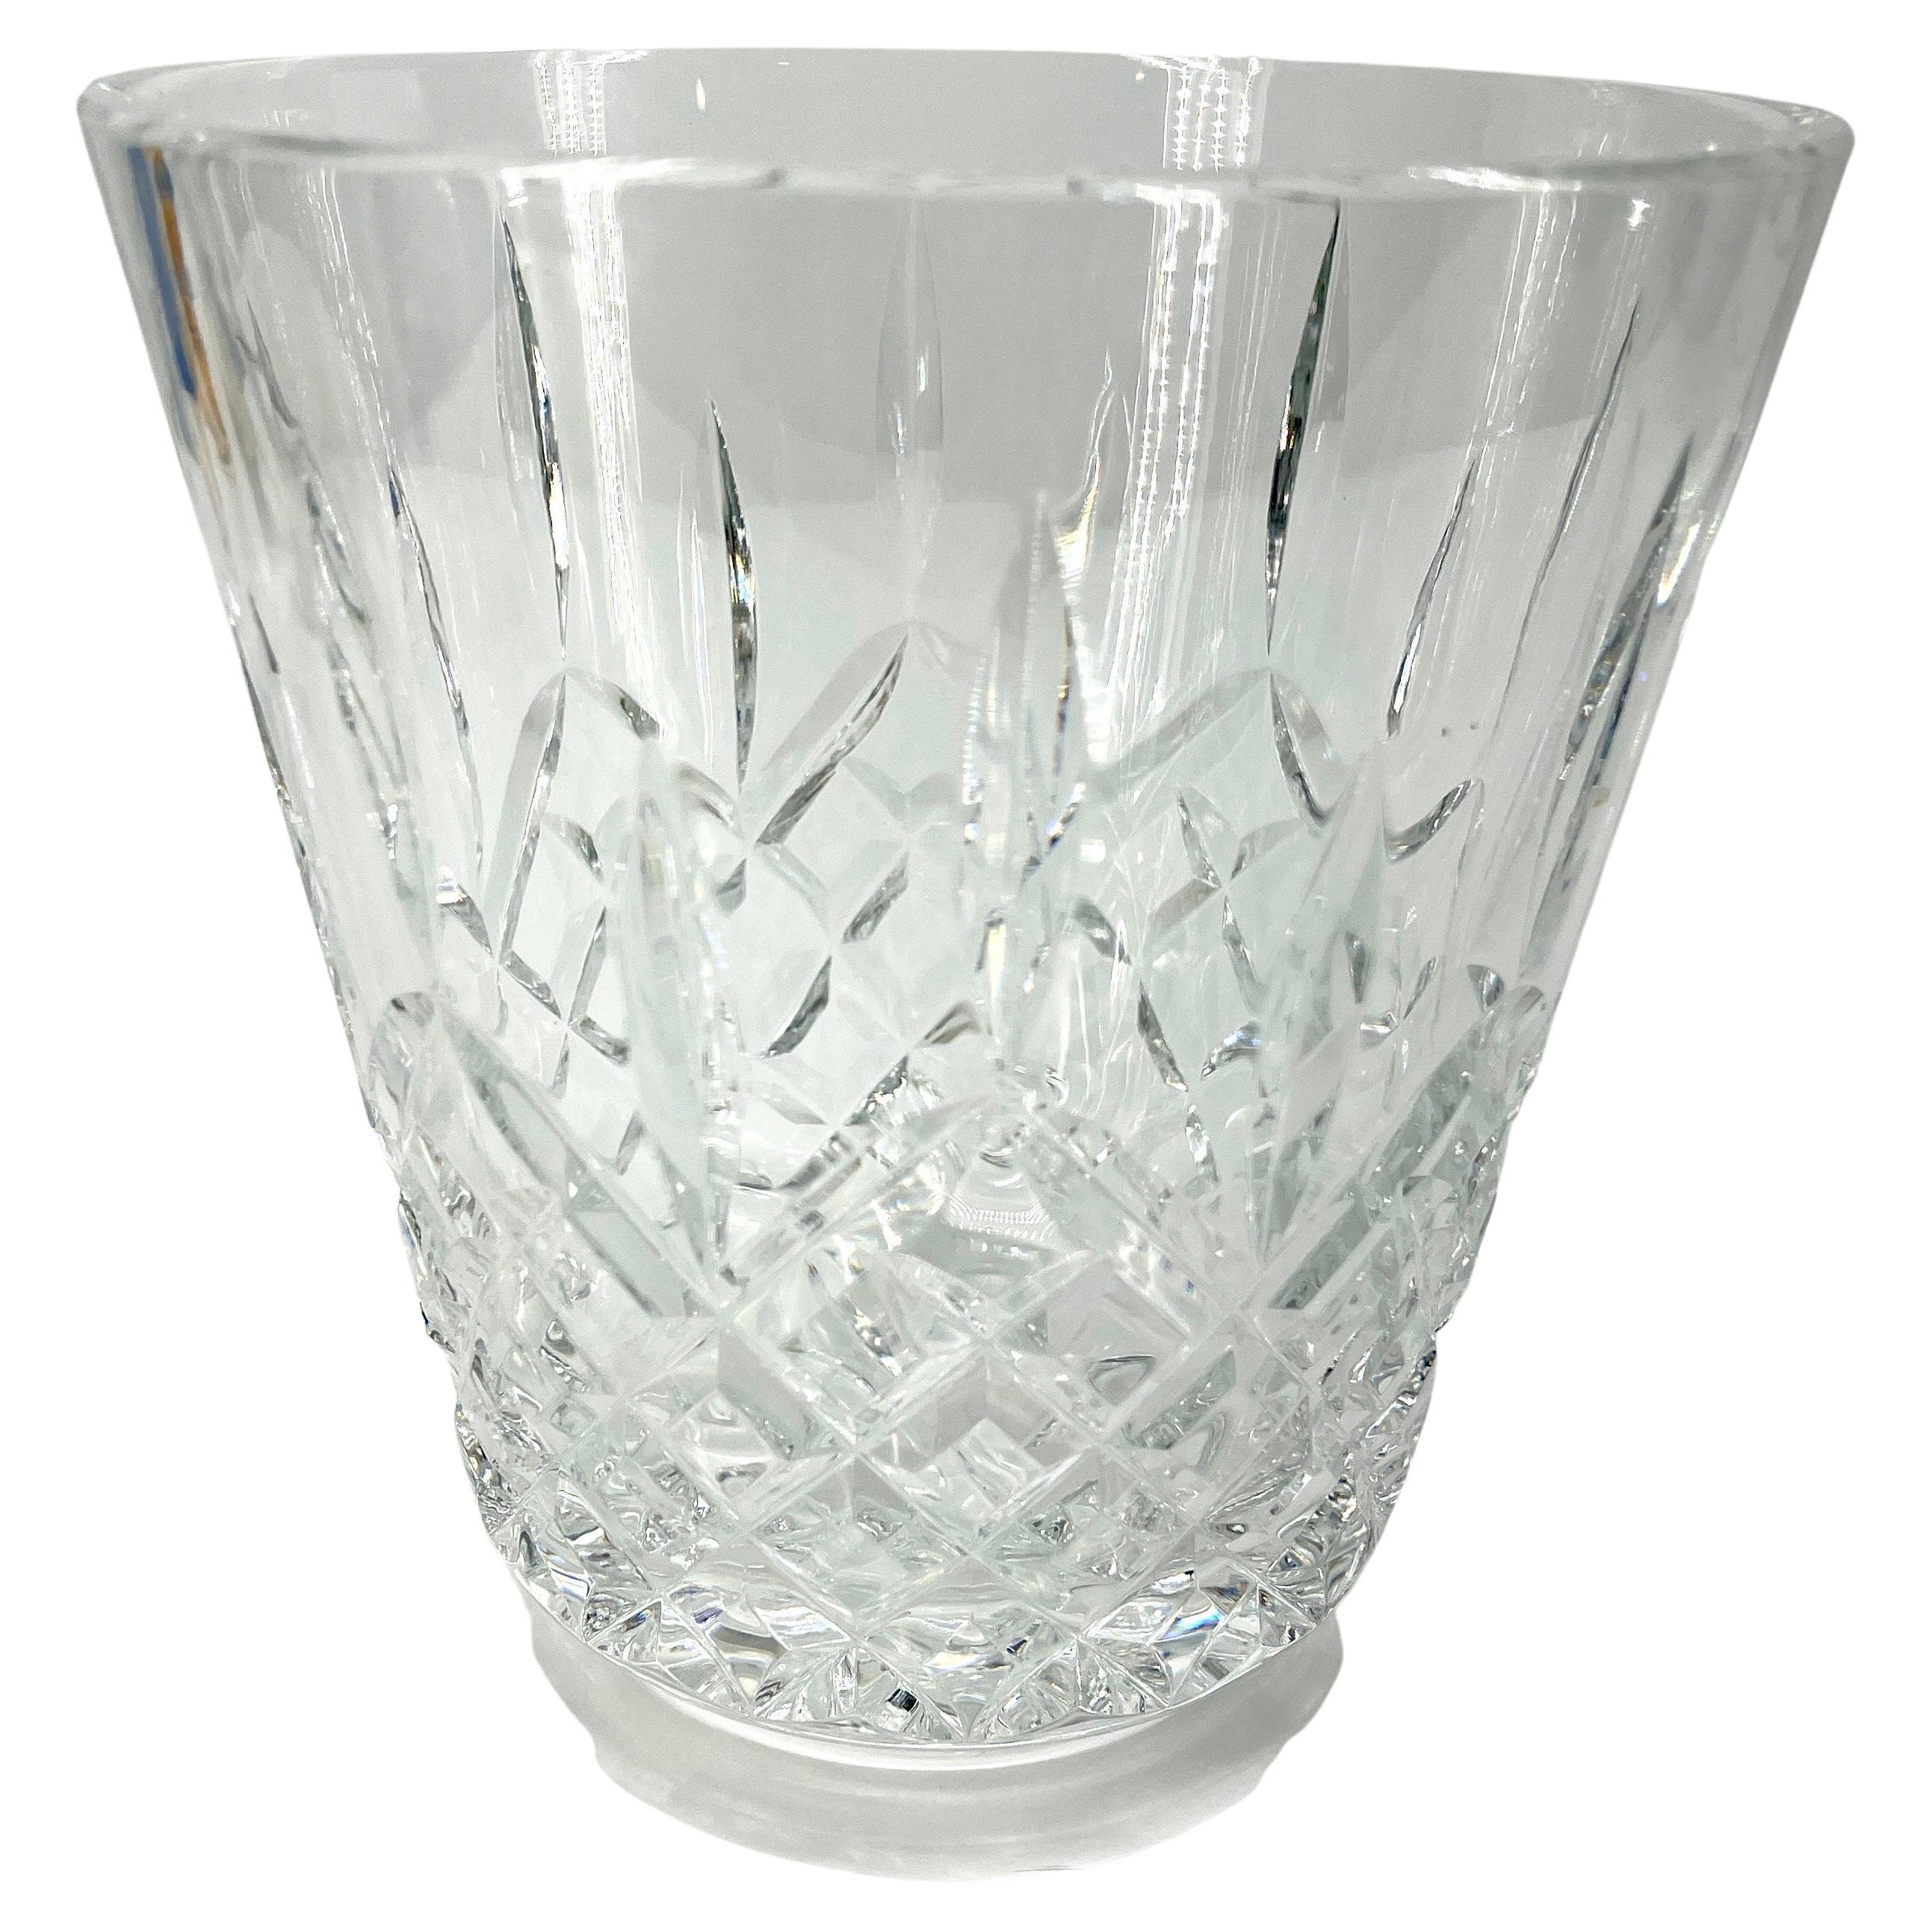 Lismore Kristall-Eiskübel für Champagner, Waterford 

Das Waterford Lismore-Muster ist eine atemberaubende Kombination aus Brillanz und Klarheit, die sich durch die atemberaubende Klarheit des für Lismore typischen diamant- und keilgeschliffenen